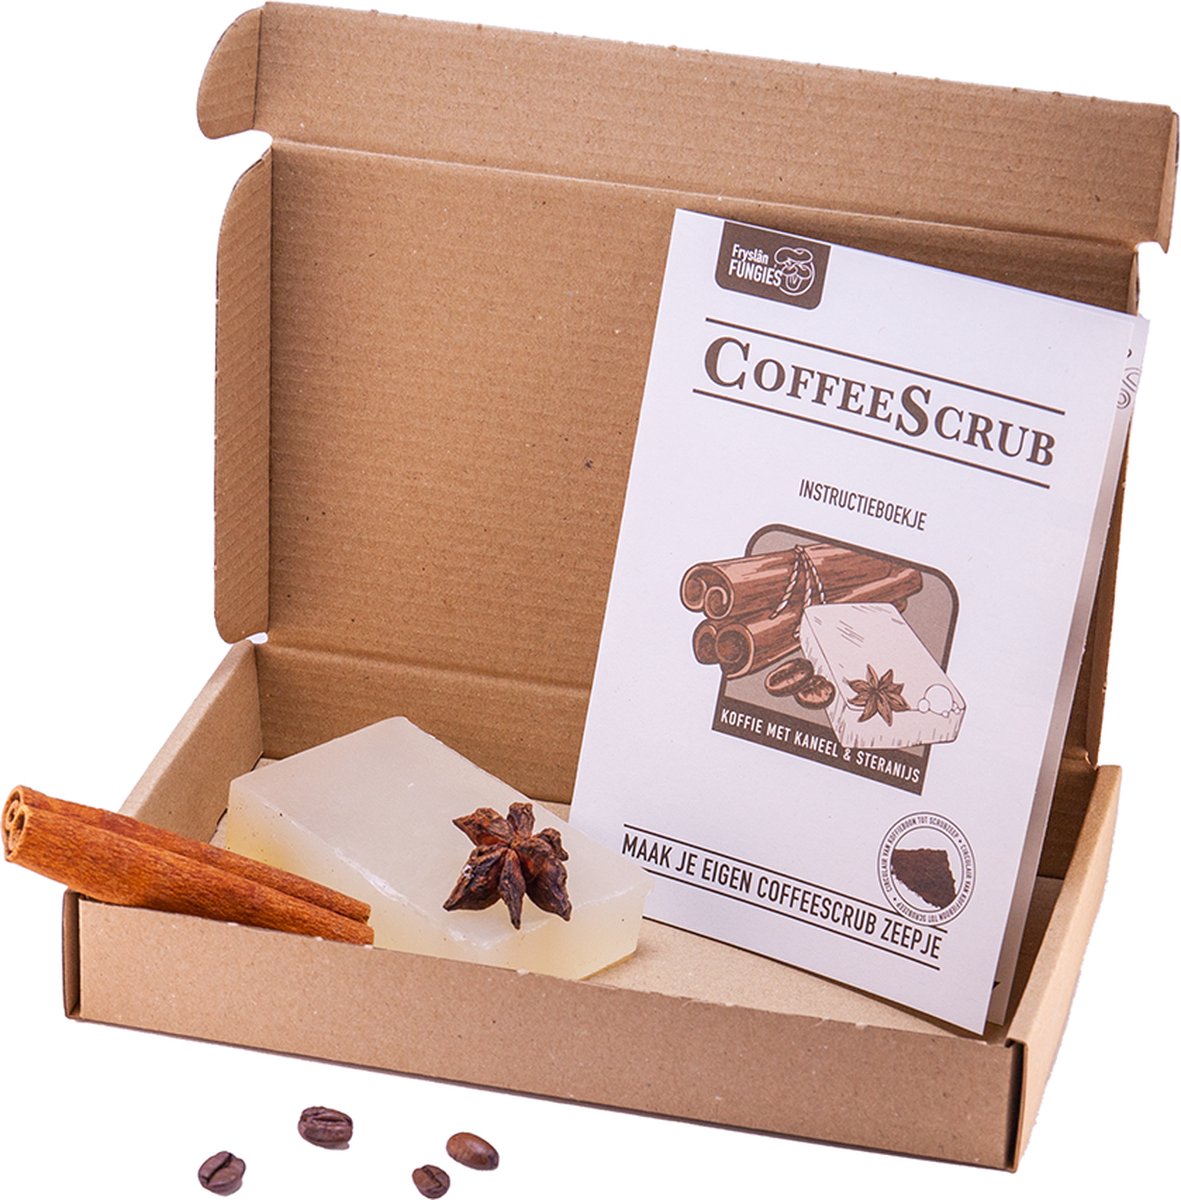 Maak je eigen koffie zeep - Coffee Scrub - DIY zeep